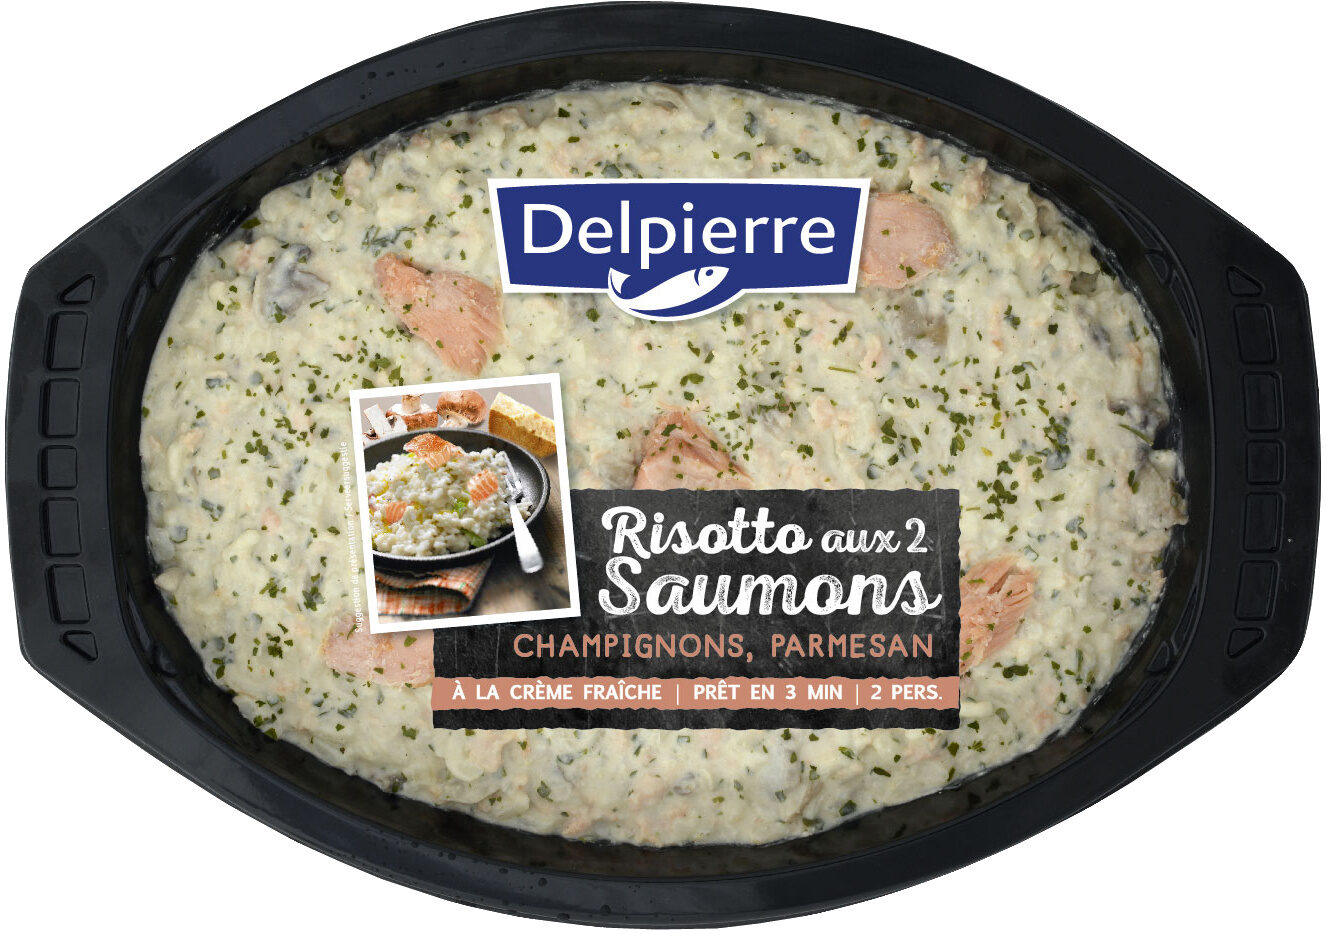 Risotto aux 2 saumons champignon , parmesan - Product - fr